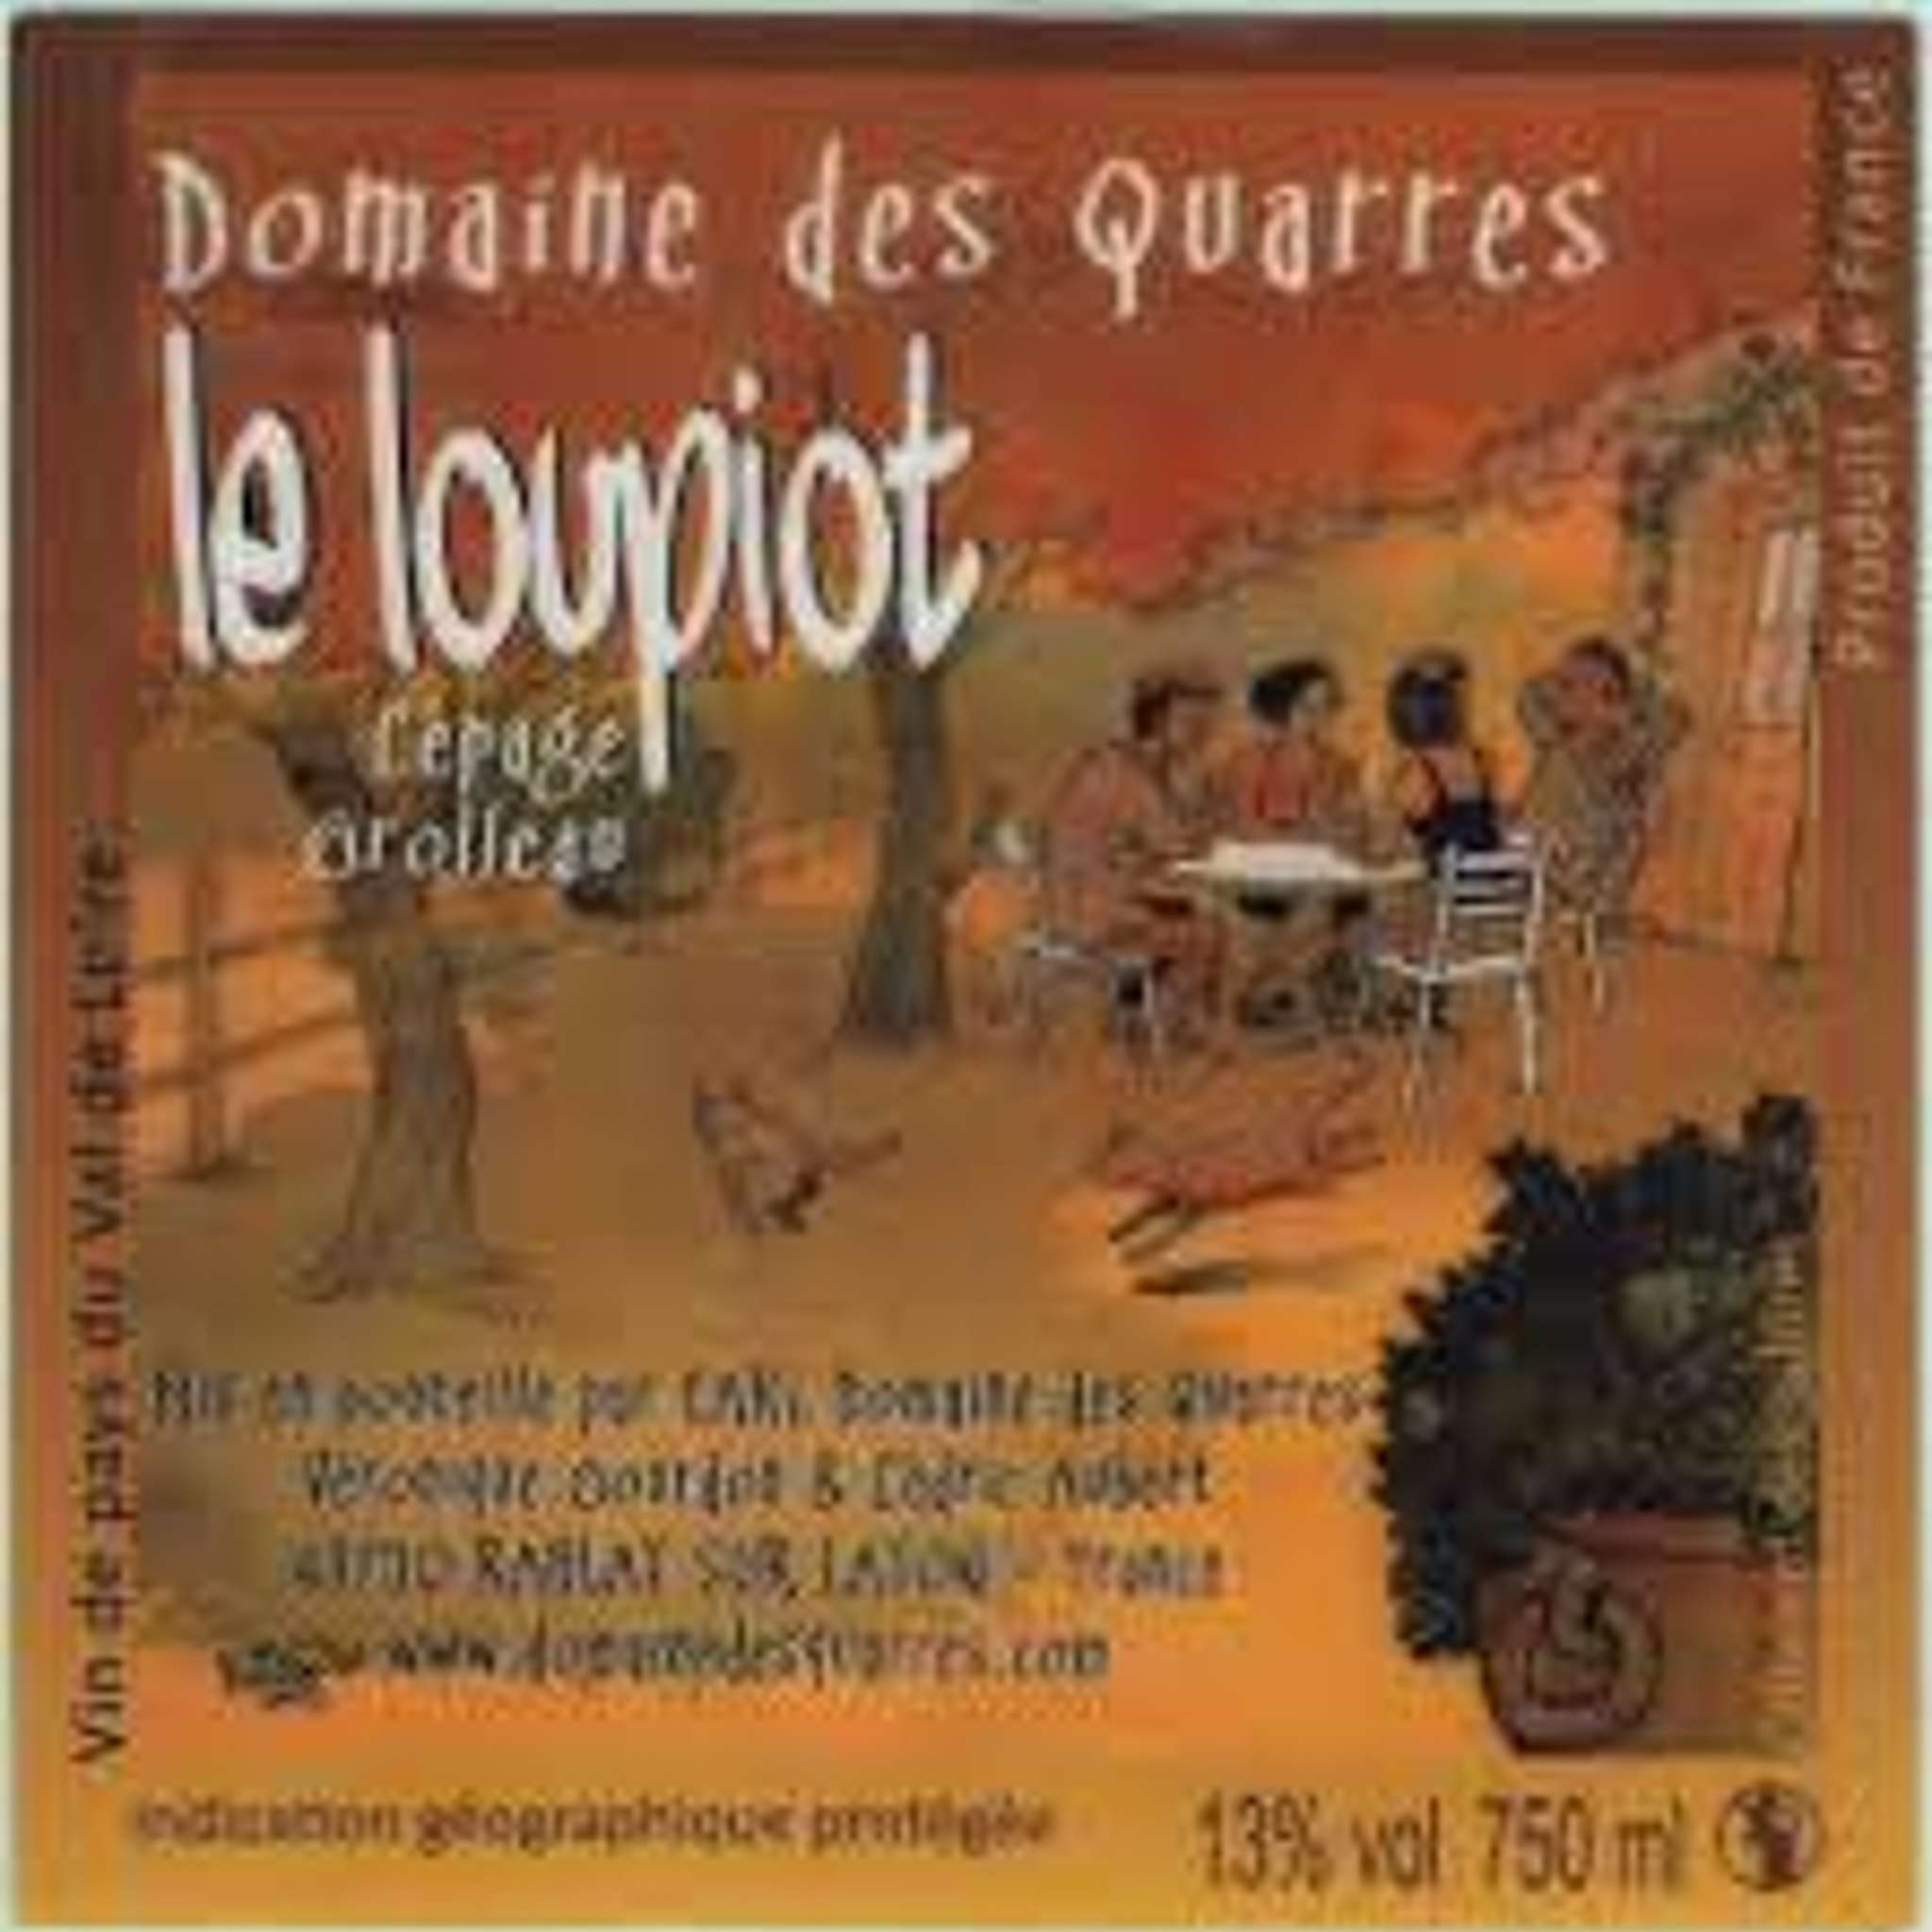 ル・ルーピオ
Le Louoiot